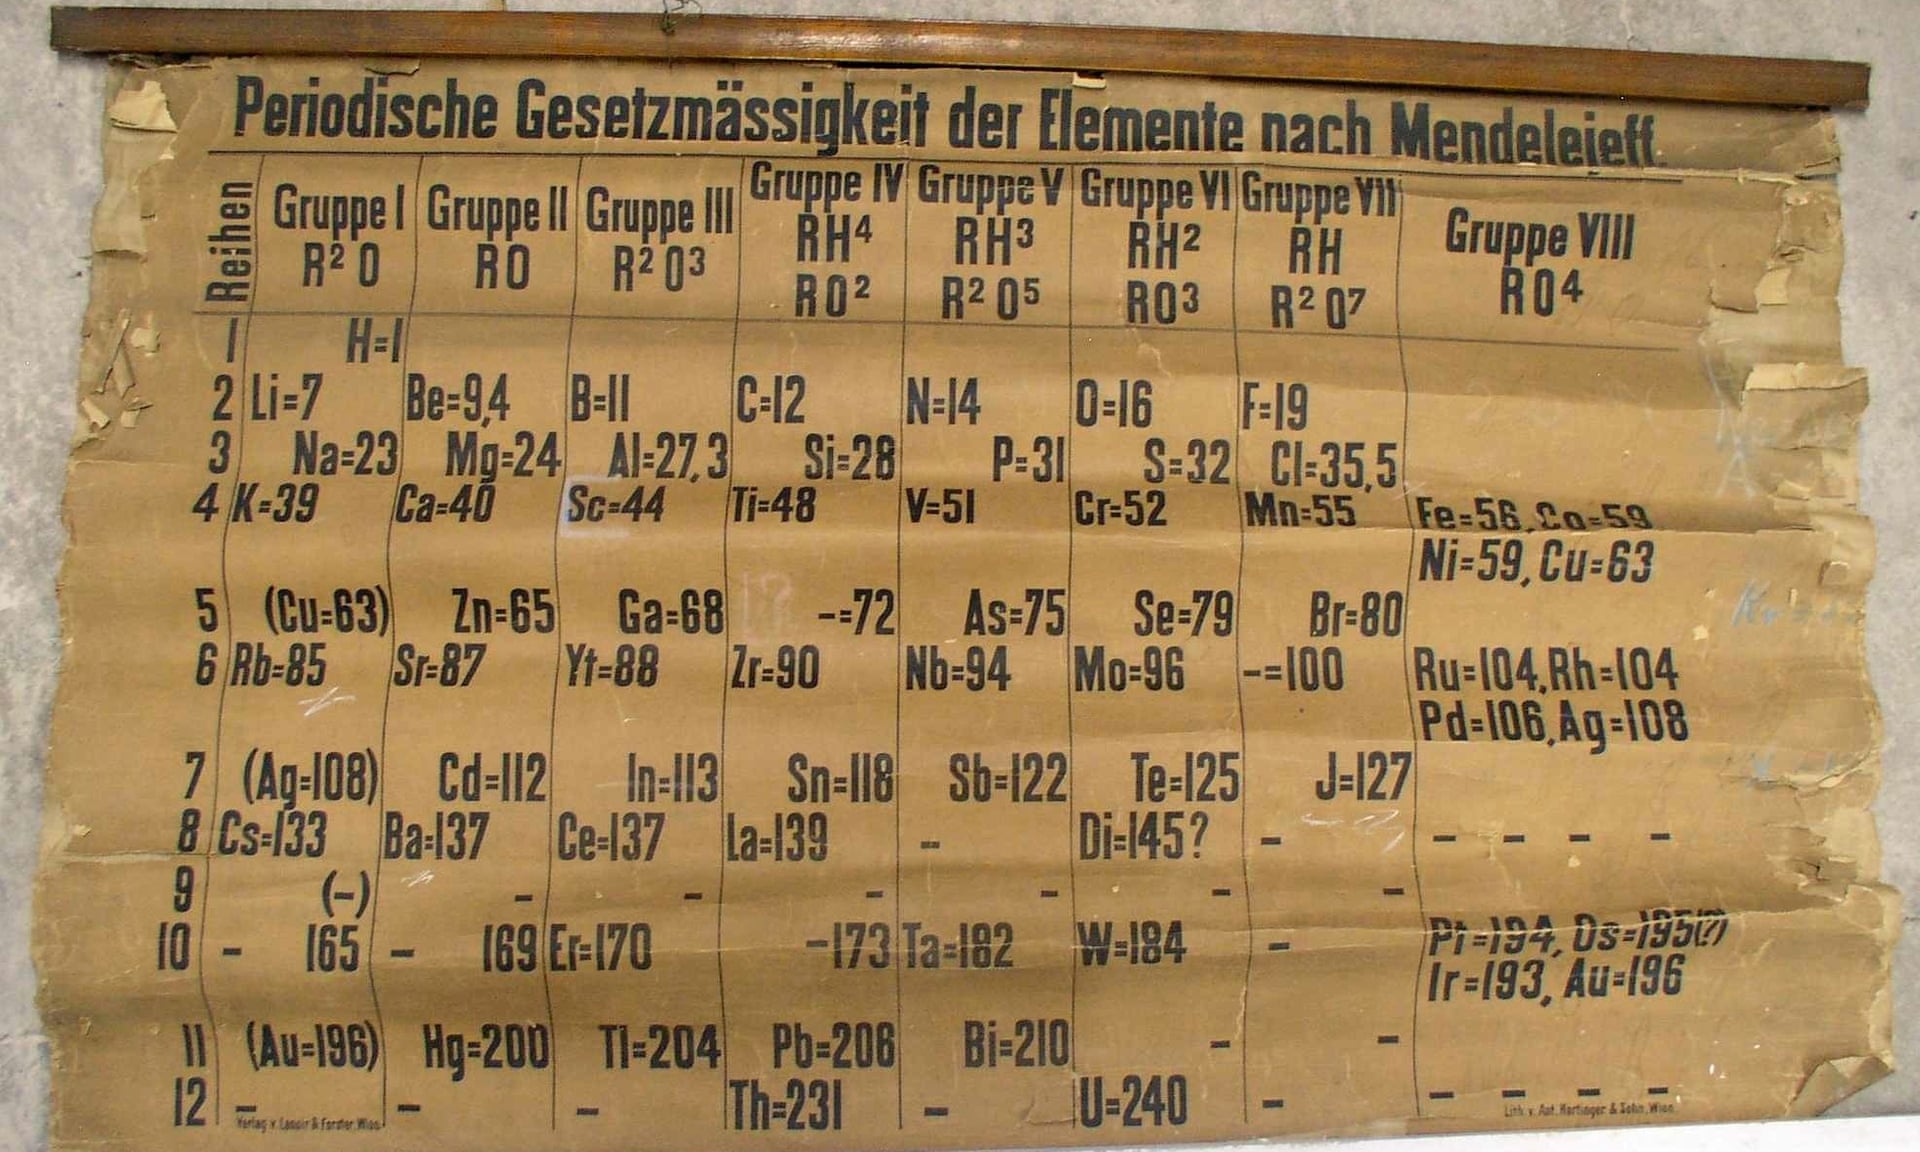 Ученый случайно нашел самую старую версию периодической таблицы Менделеева